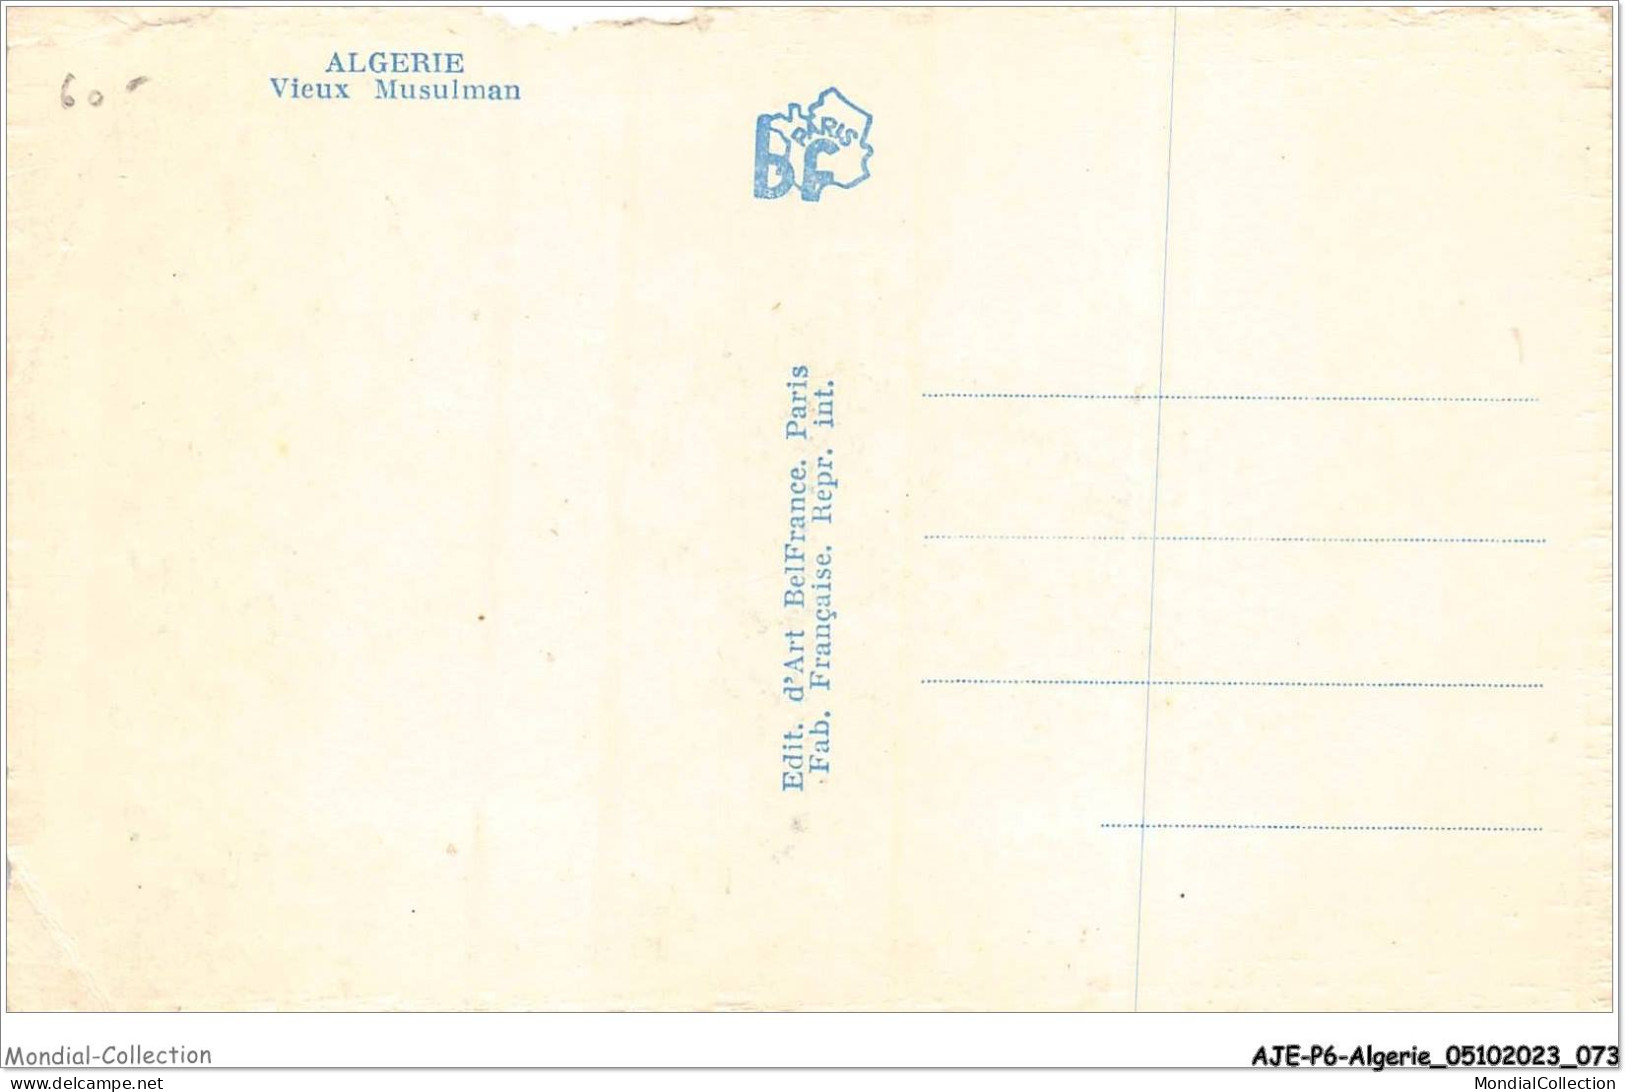 AJEP6-ALGERIE-0543 - ALGERIE - Vieux Musulman - Men